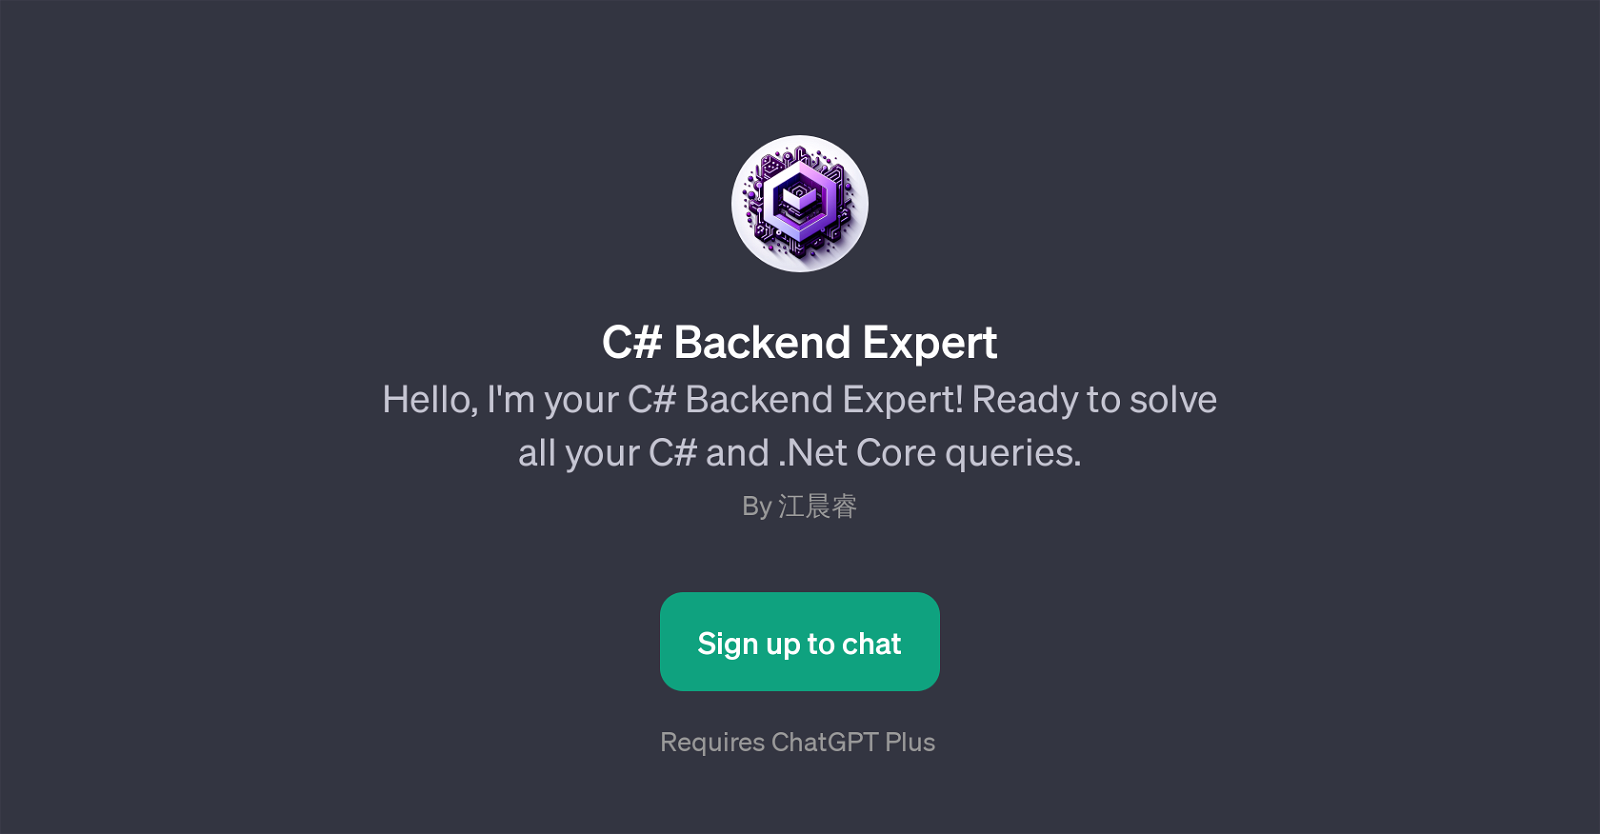 C# Backend Expert website